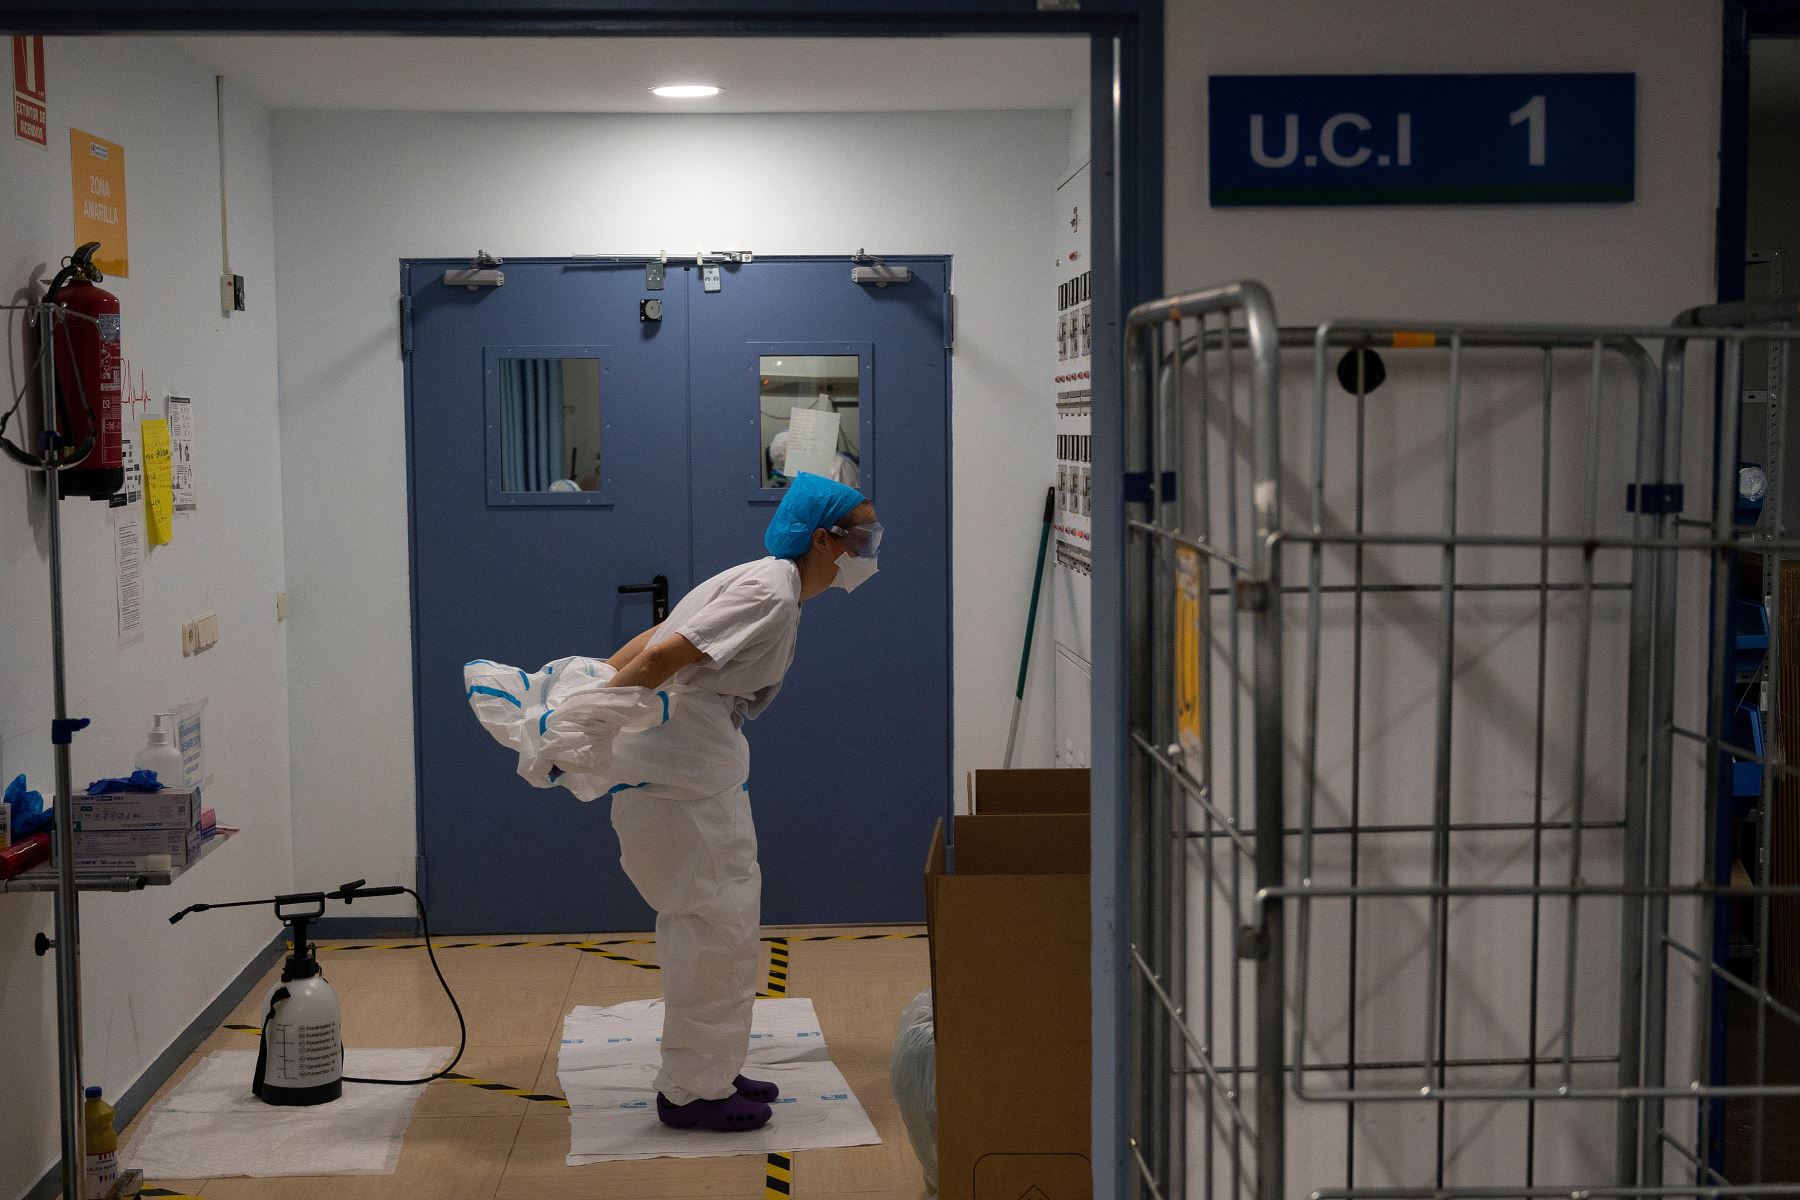 Una trabajadora sanitaria se quita el traje de protección luego de atender a pacientes con coronavirus en la Unidad de Cuidados Intensivos (UCI) del Hospital Universitario Severo Ochoa de Leganés, en Madrid. Foto: AFP